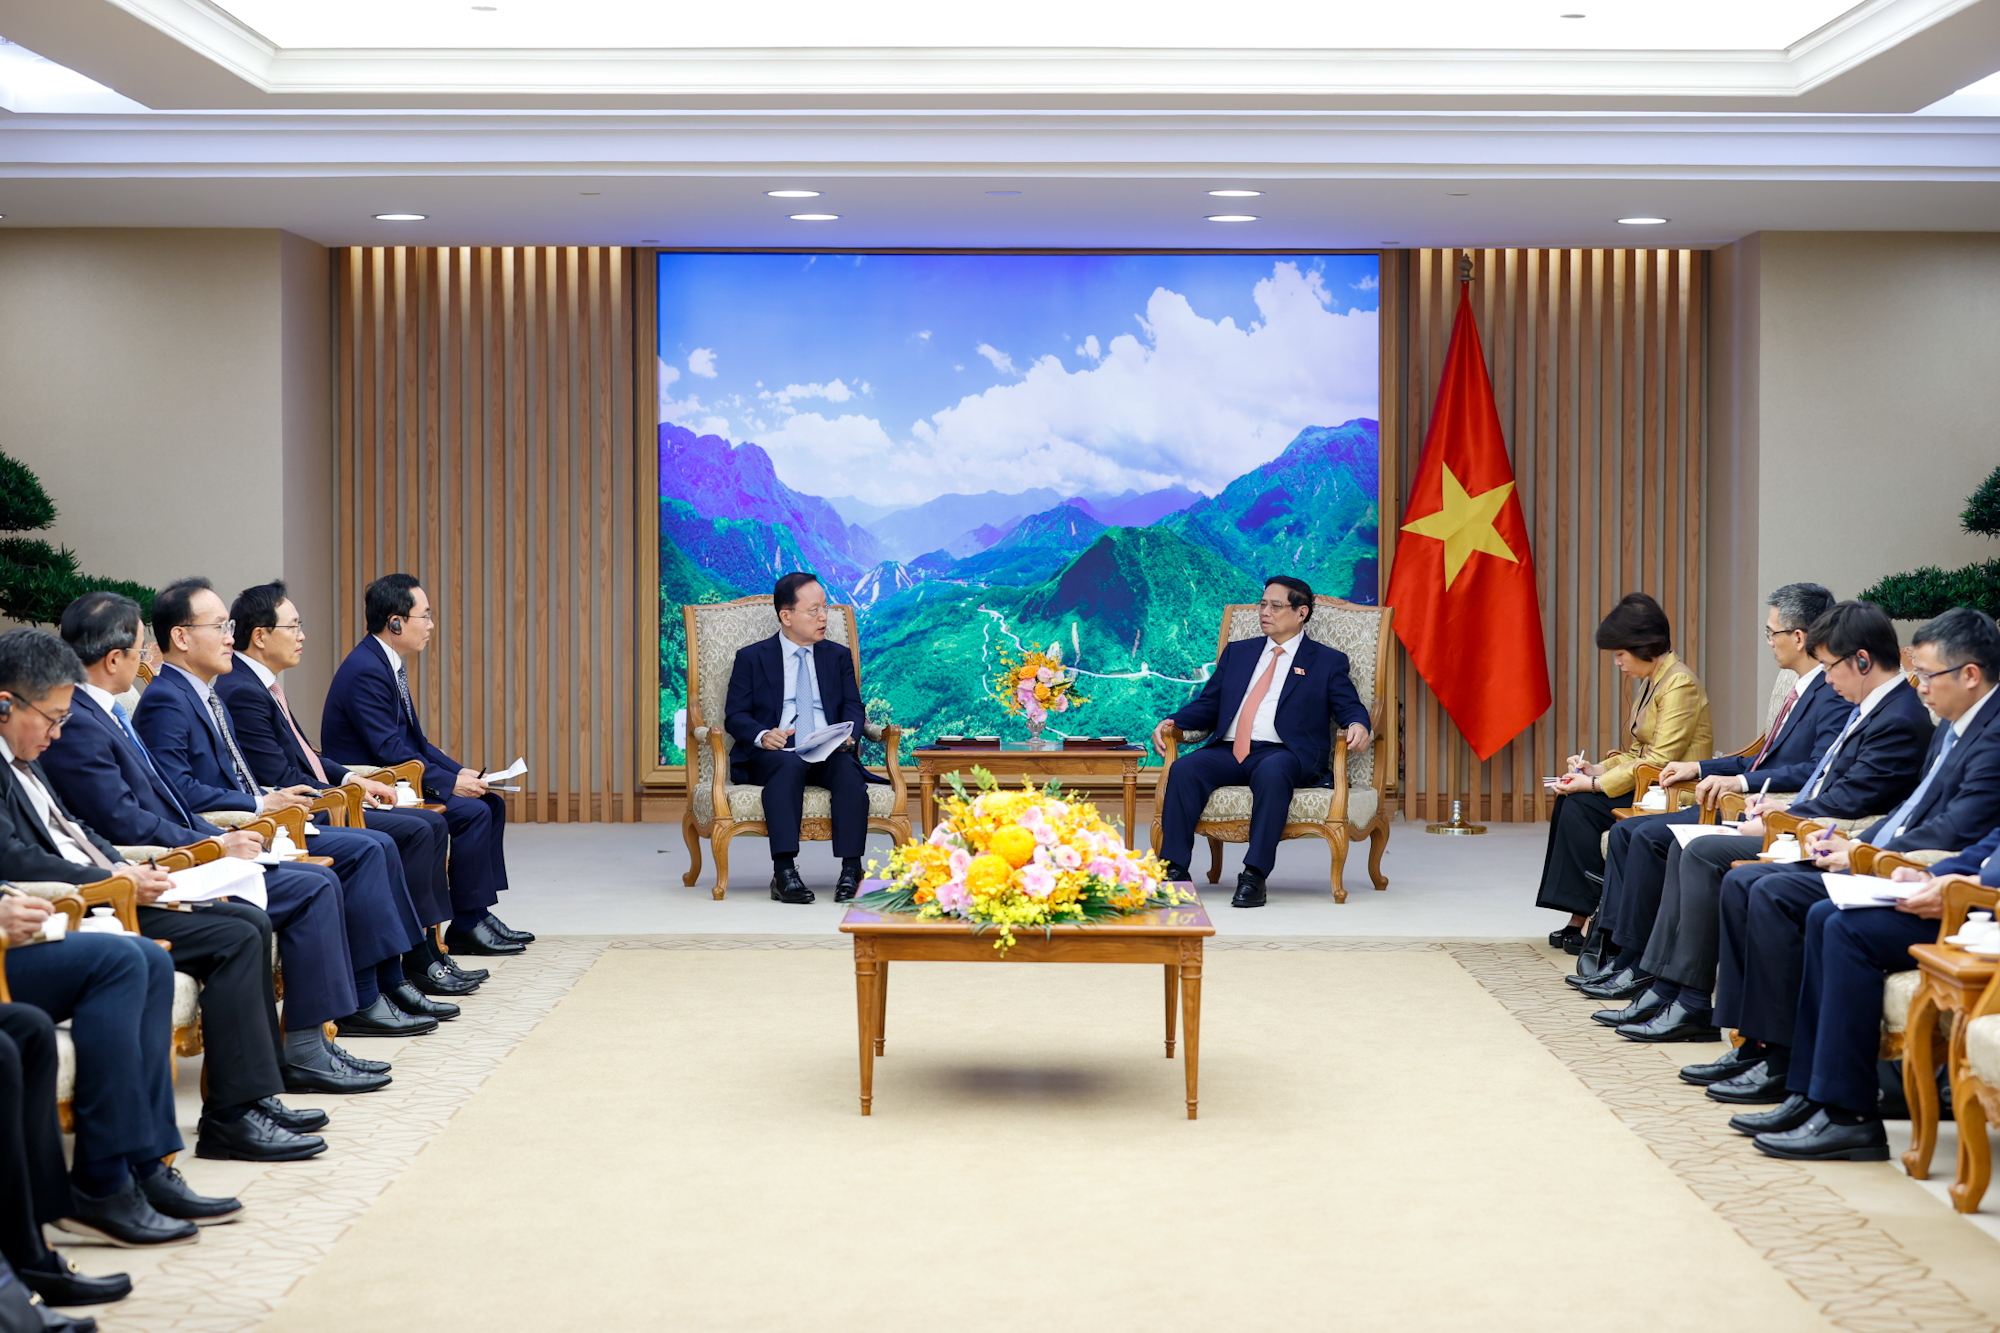 Tổng Giám đốc Park Hark Kyu: Samsung cam kết sẽ luôn đồng hành với Việt Nam, nỗ lực hết sức nhằm đóng góp vào sự phát triển kinh tế-xã hội của Việt Nam - Ảnh: VGP/Nhật Bắc